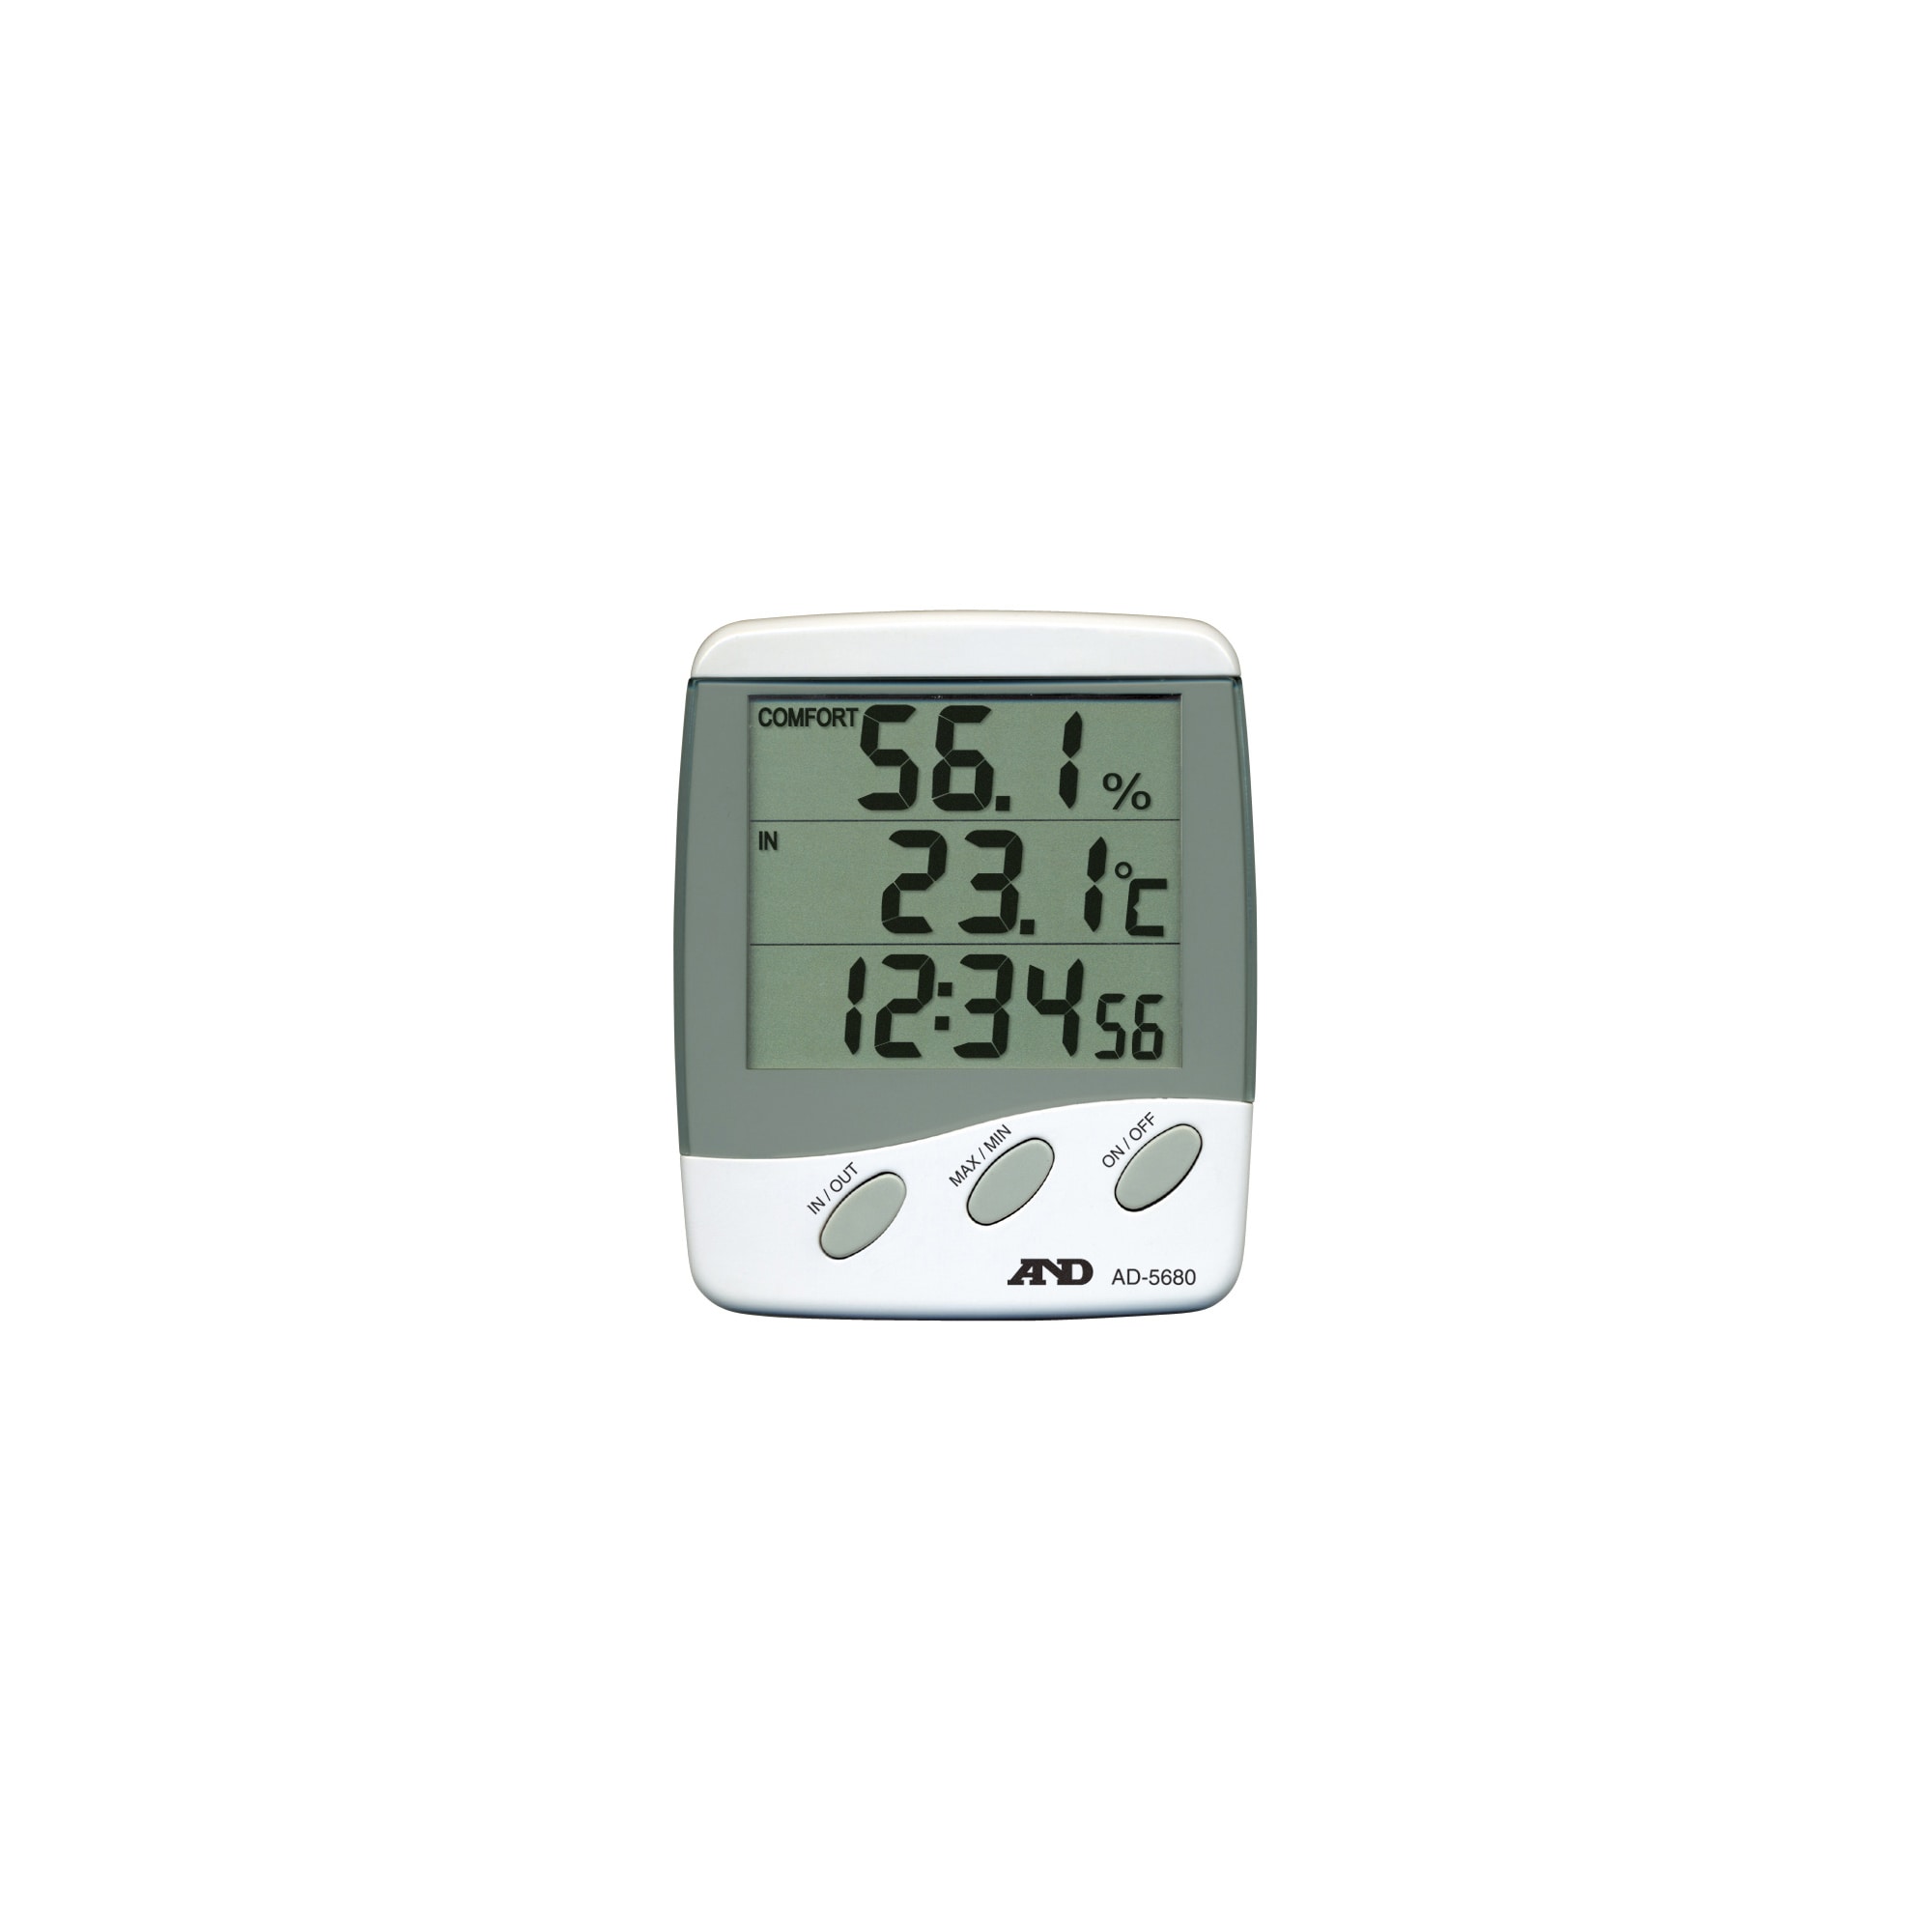 Indoor Thermometer-Hygrometer - Wall/Desktop Type, External